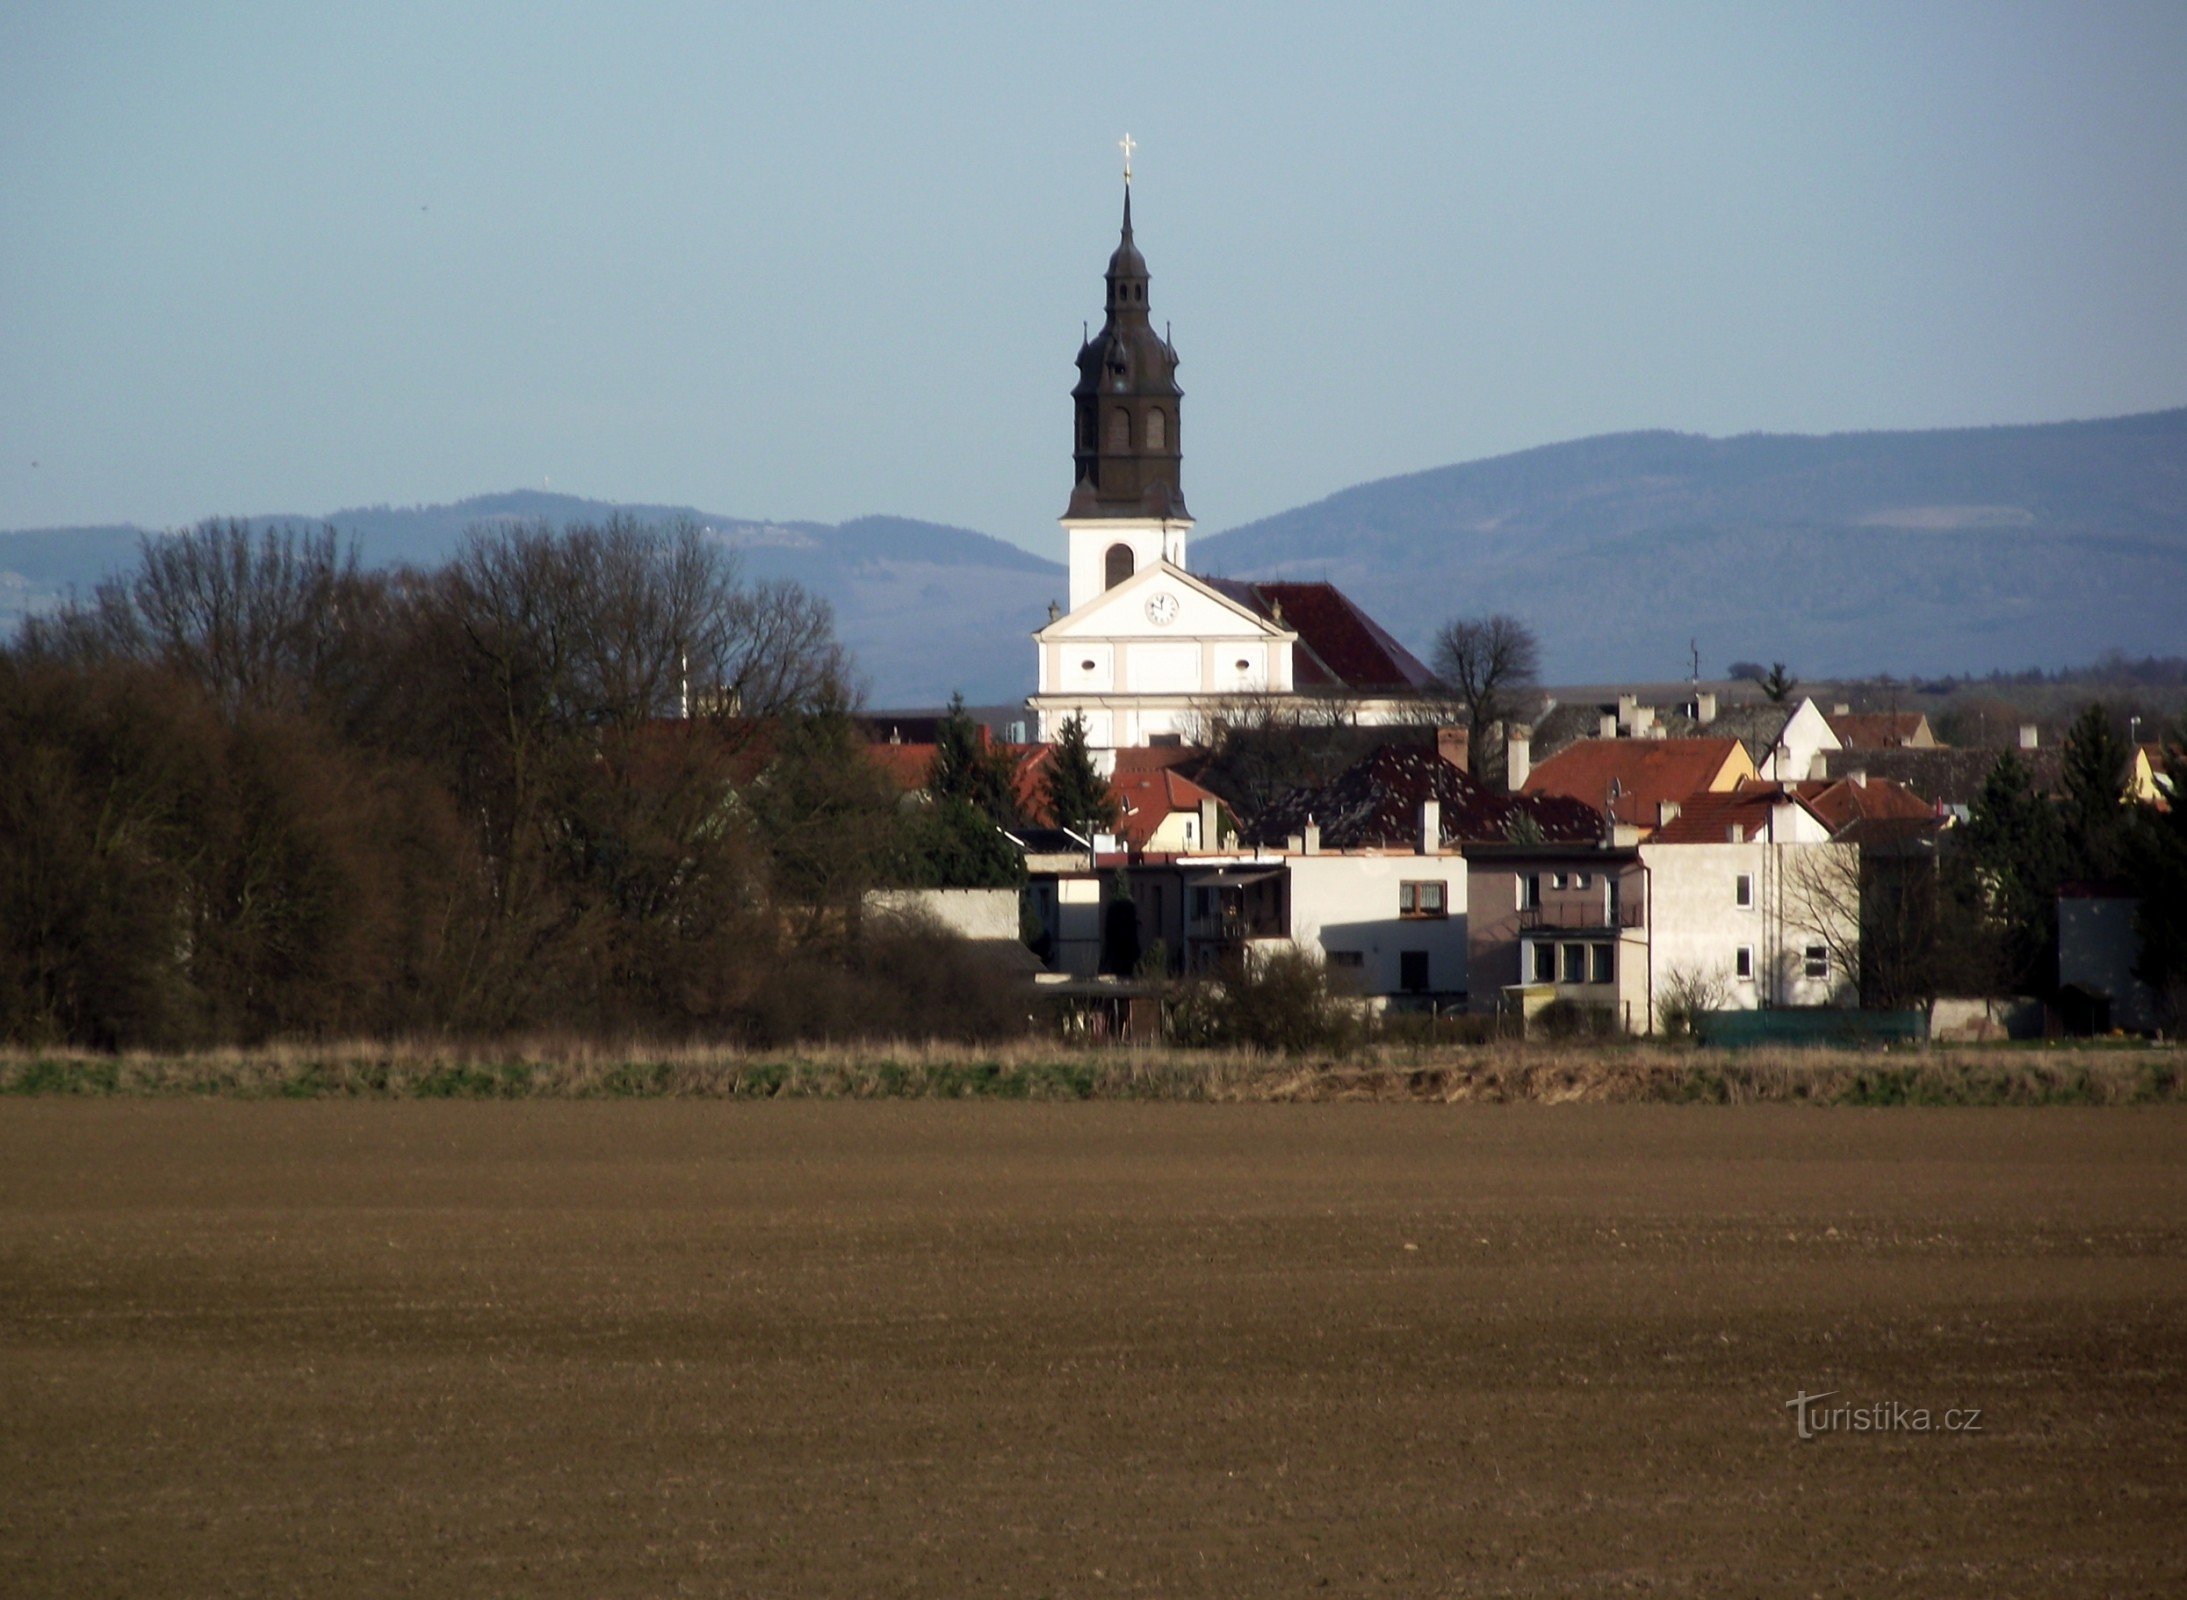 Uherský Ostroh – nhà thờ St. Andrew